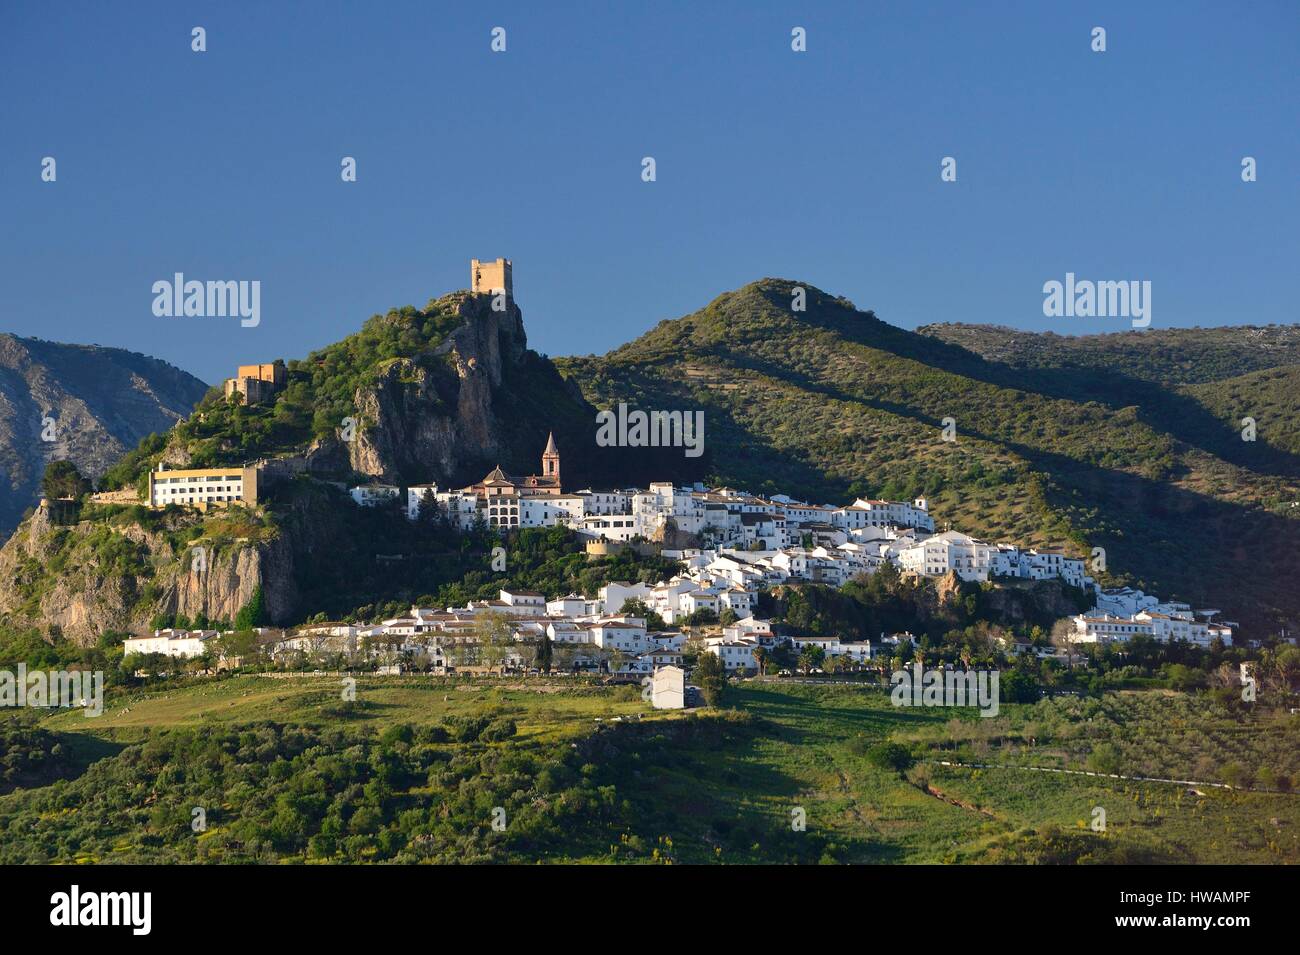 Spanien, Andalusien, Cadix Provinz, Zahara De La Sierra, Naturpark Sierra de Grazalema, weißen Dorf, Blick auf das Dorf auf einem Felsvorsprung und fortif Stockfoto